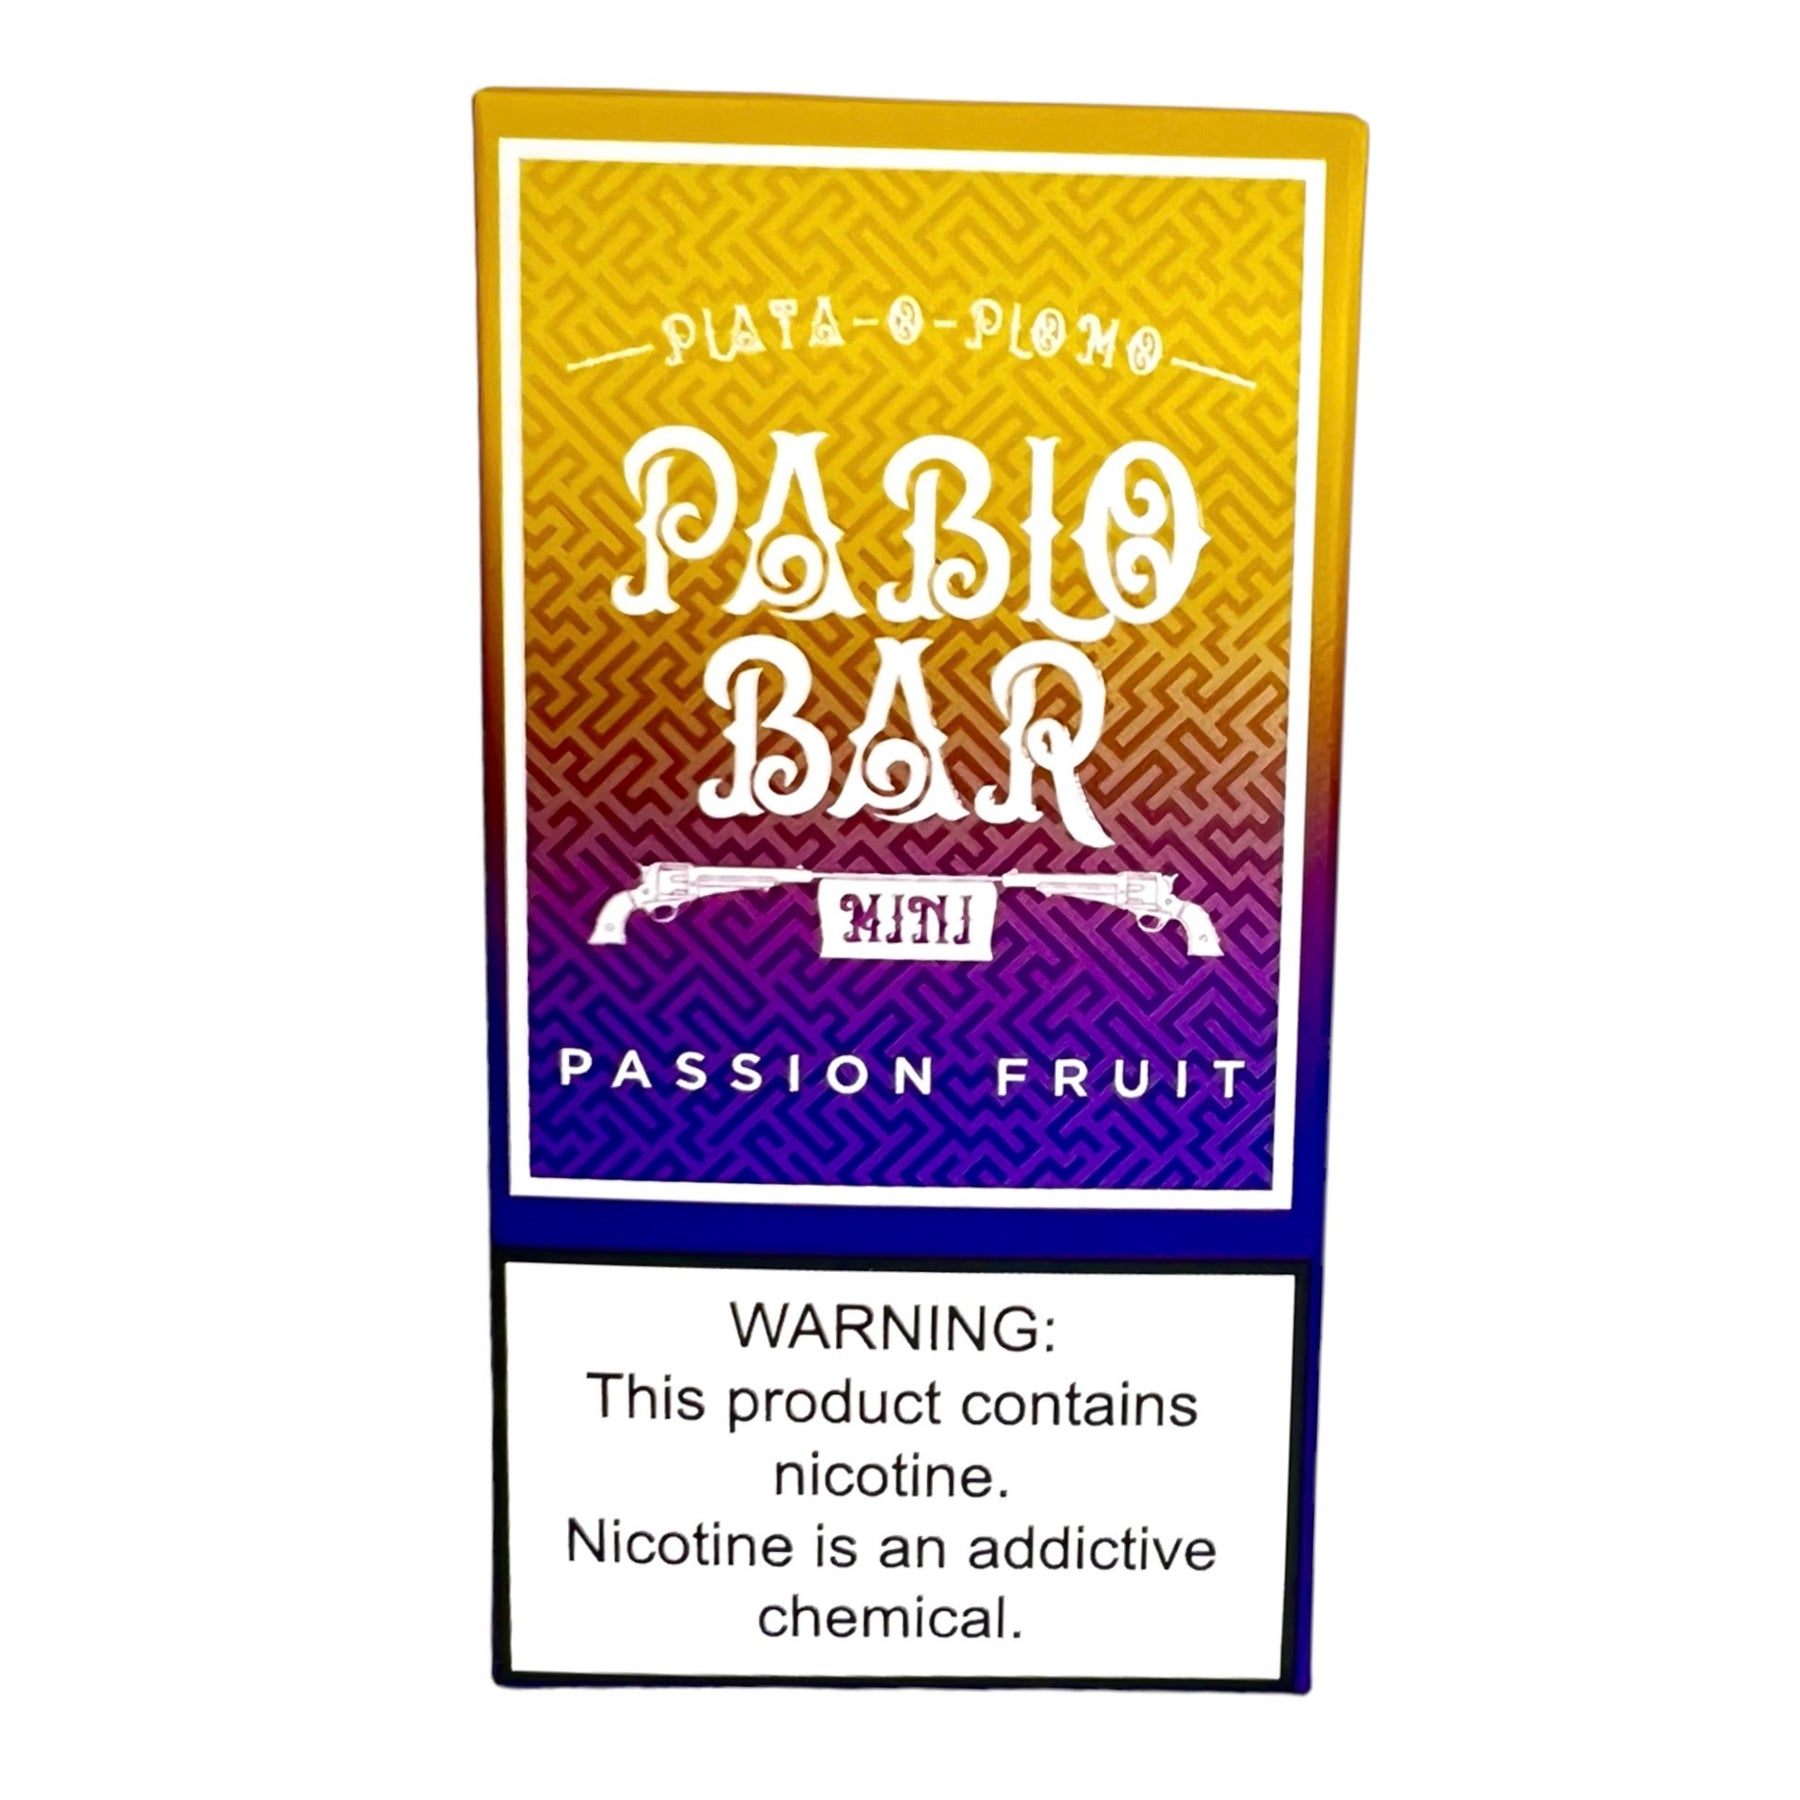 passion fruit pablo bar